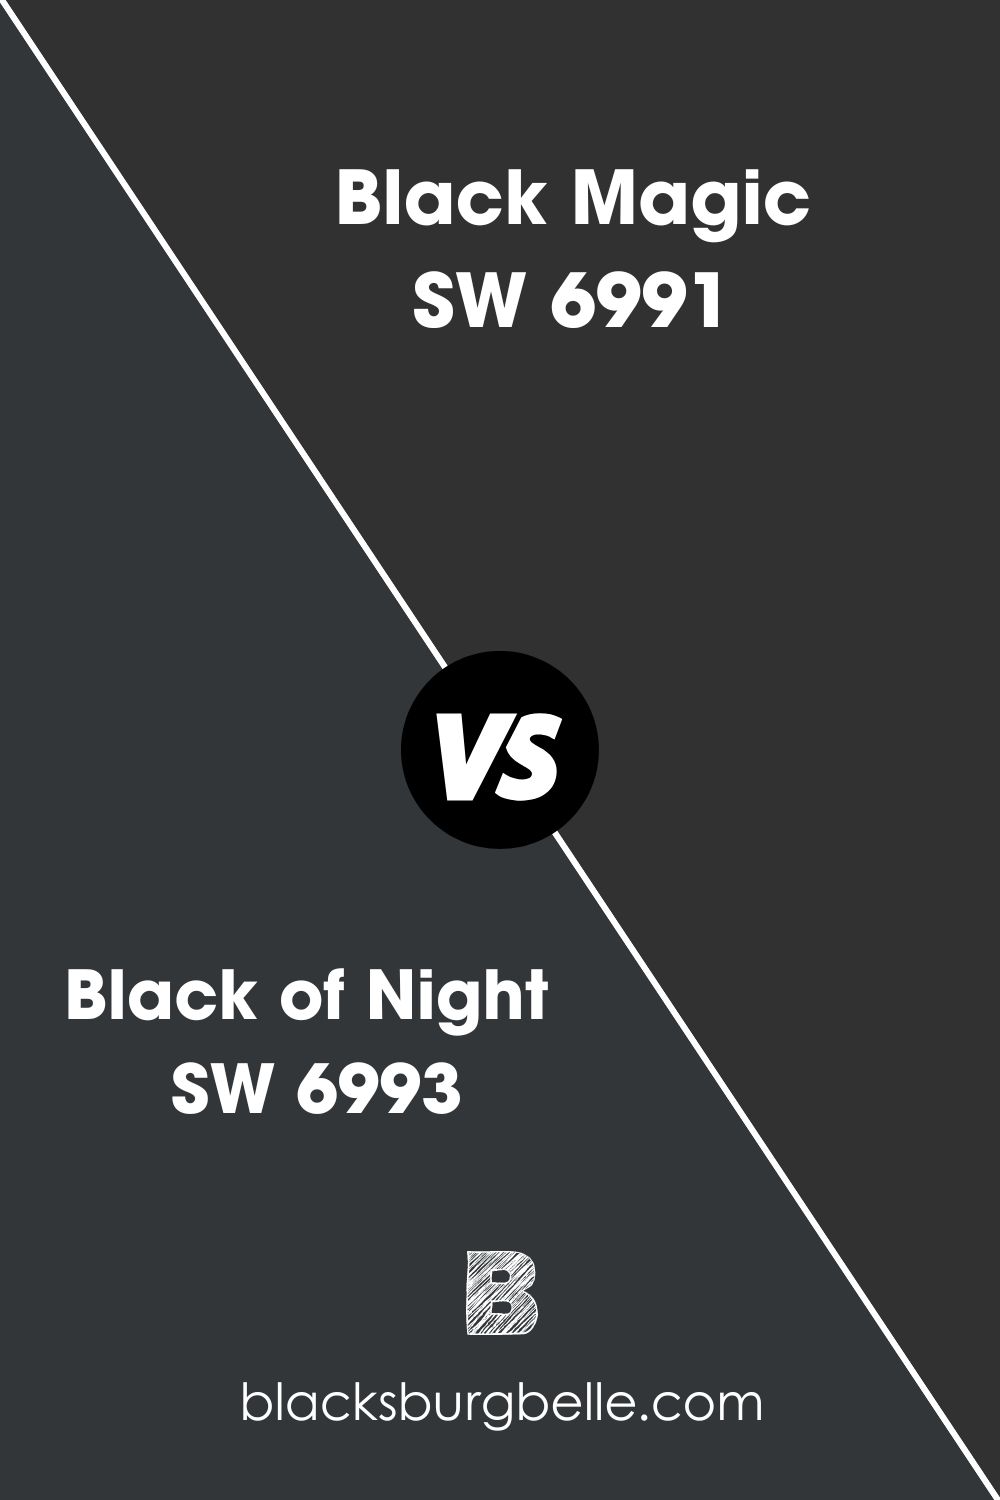 Black Magic SW 6991 (7)